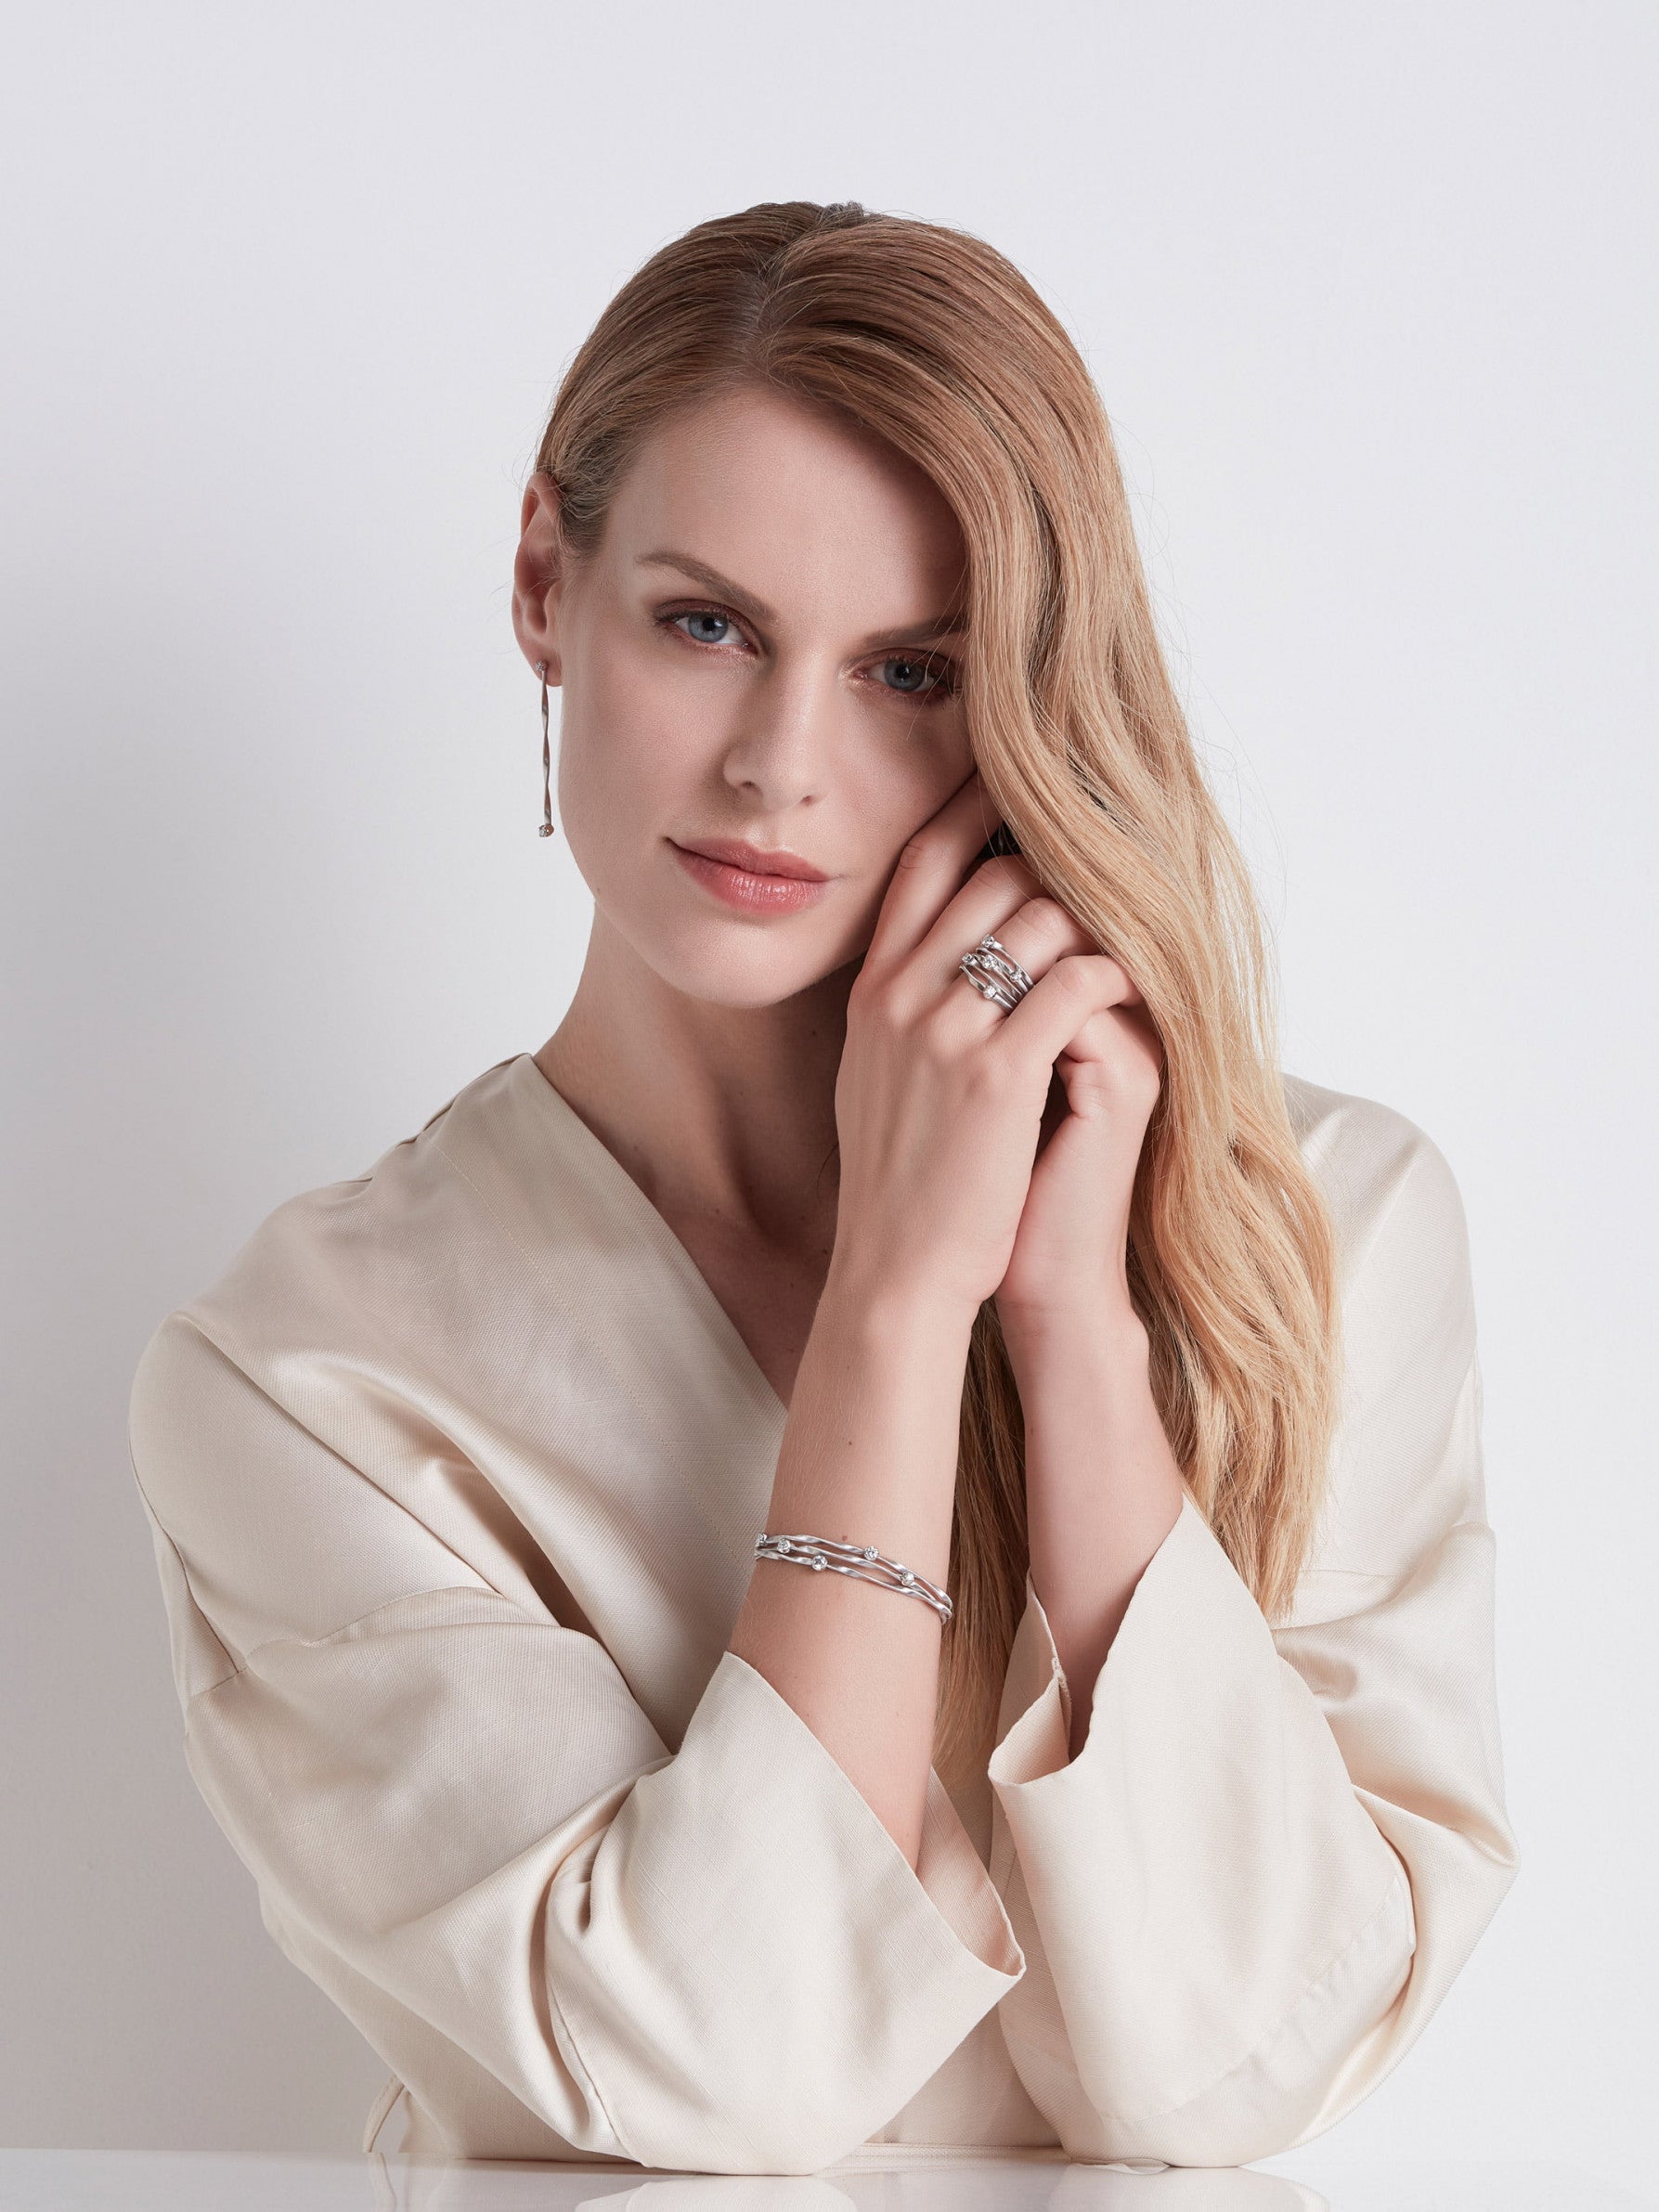 Marrakech Drop Earrings in 18k White Gold with Diamonds - Orsini Jewellers NZ